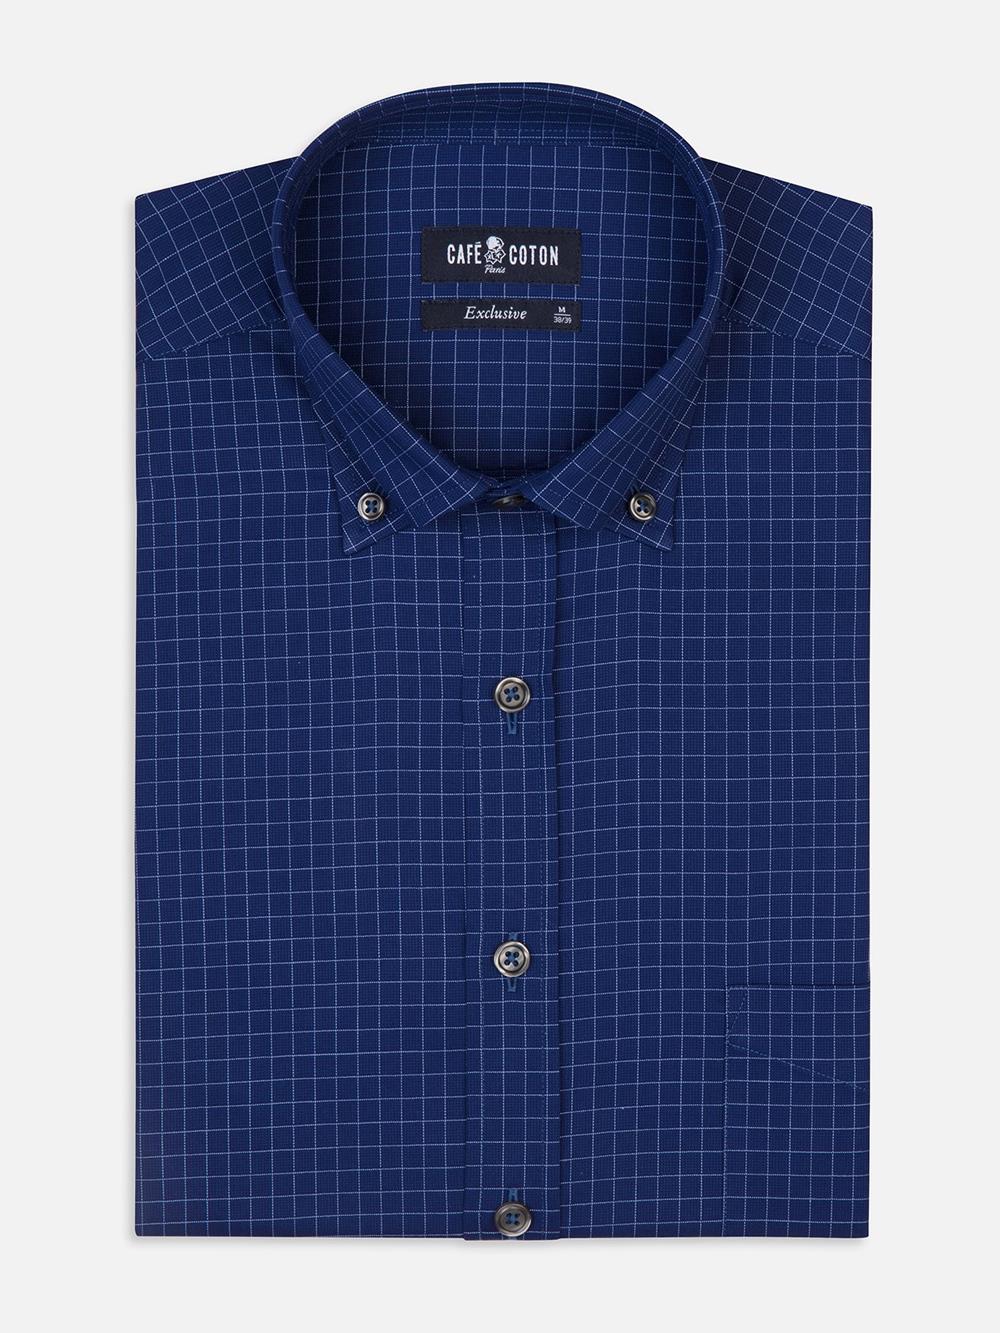 Clyde camisa de cuadros azul marino - Cuello abotonado